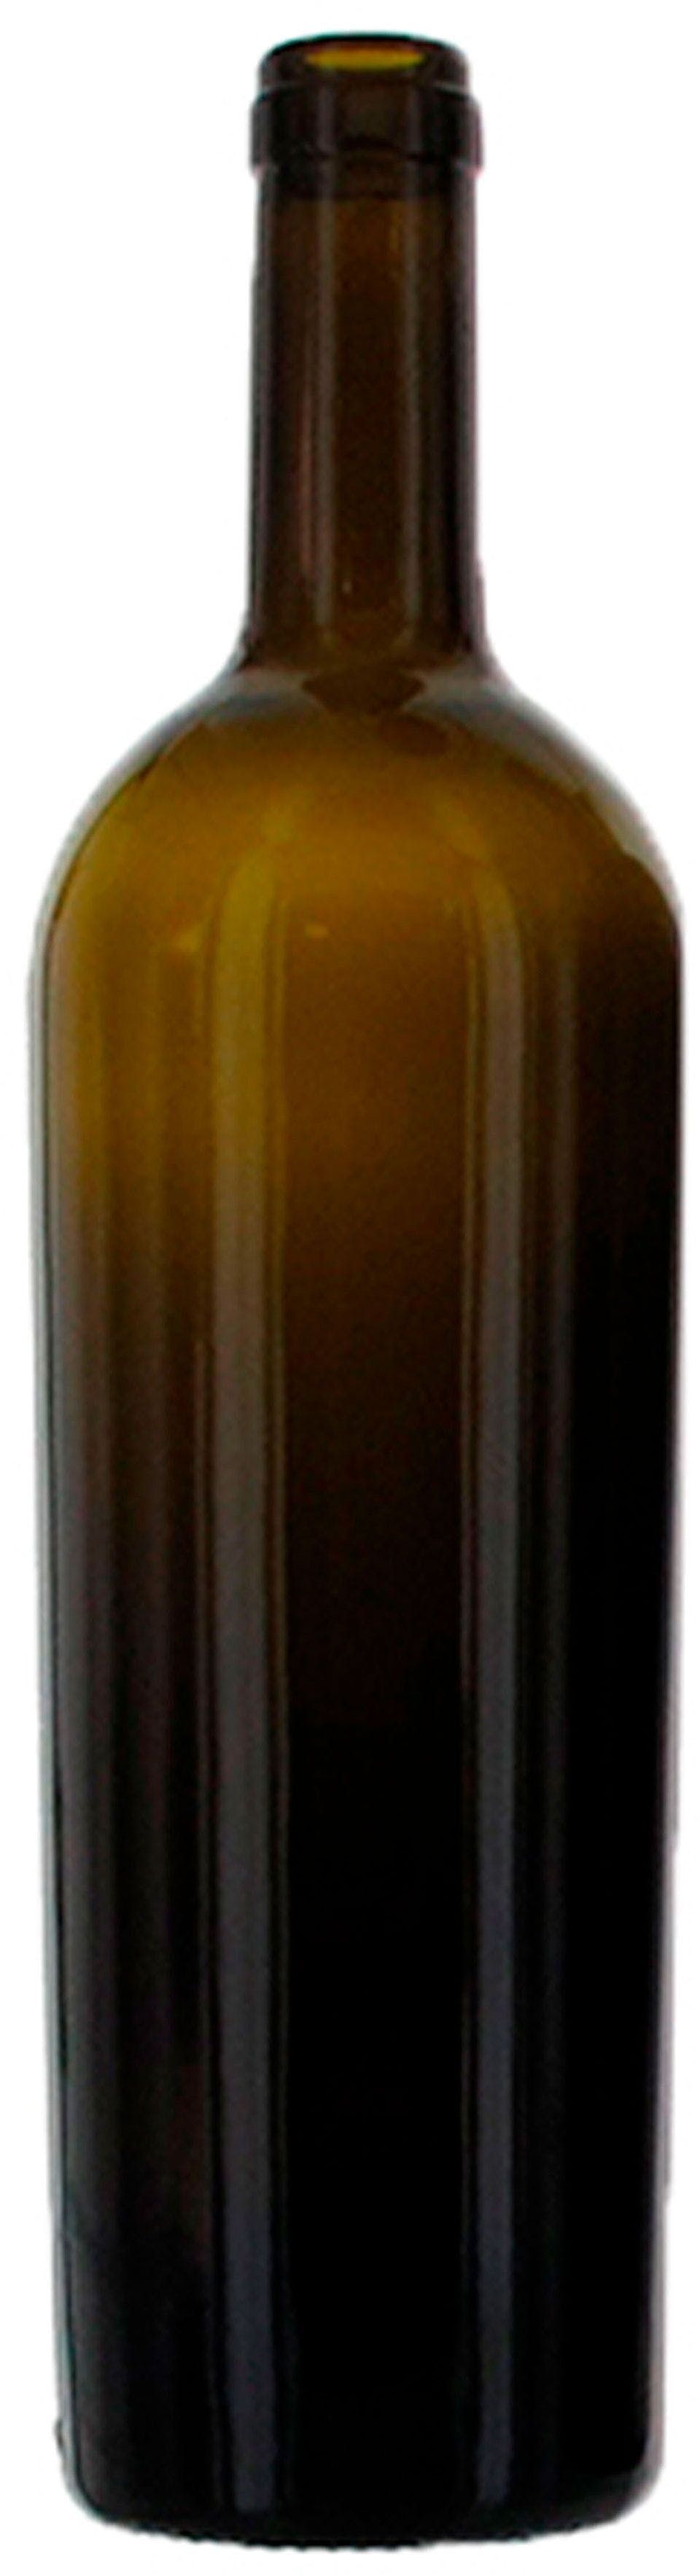 Botella BORDELESA  VENUS 750 ml BG-corcho